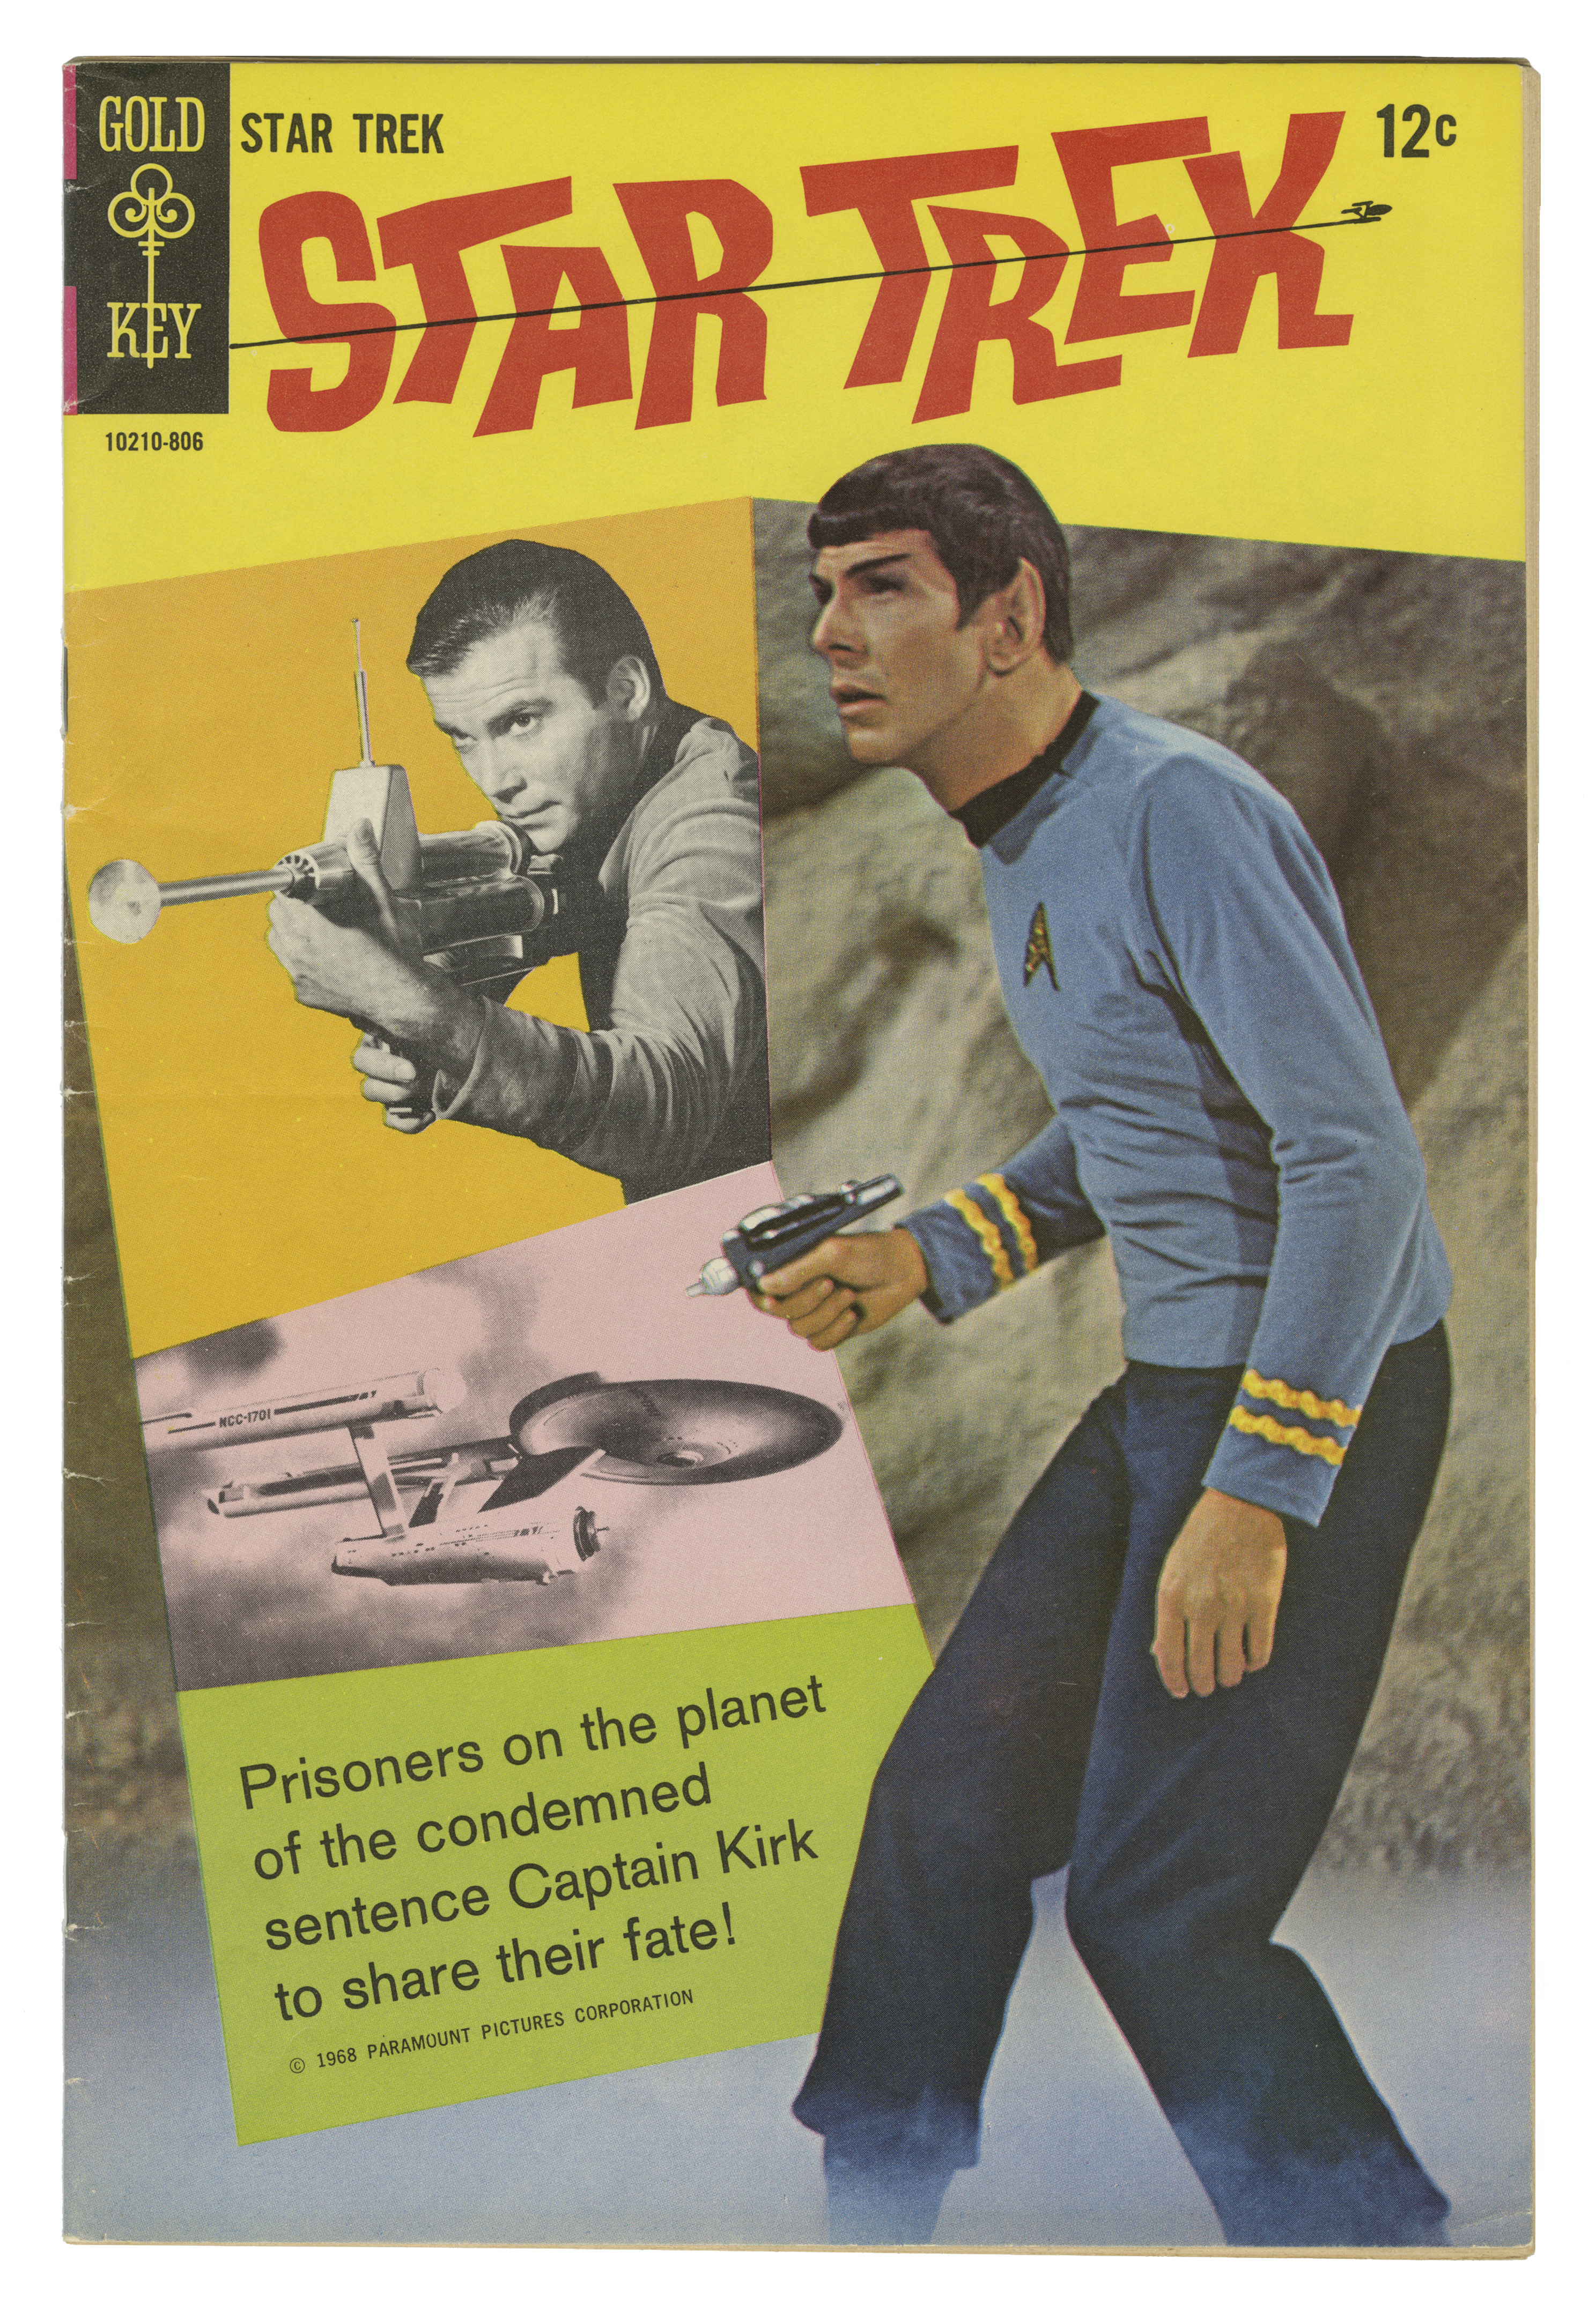 Image of Star Trek comic book